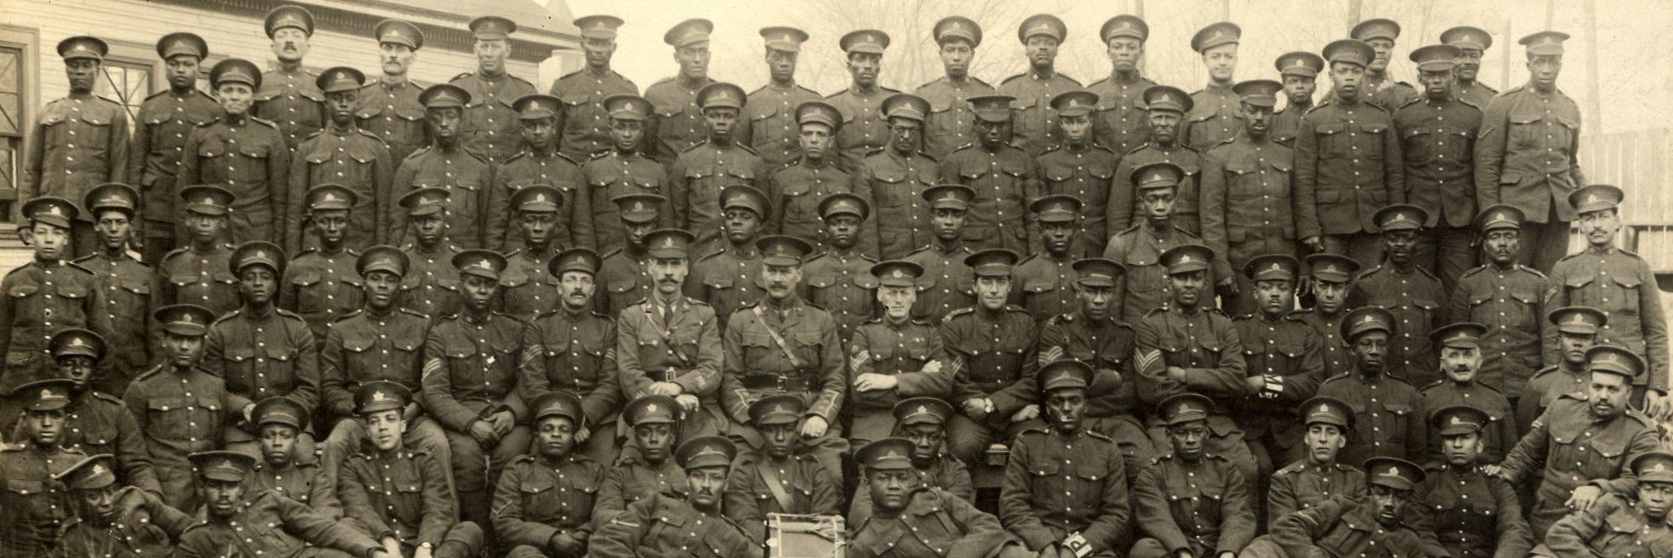 Un groupe de soldats alignés pour une photo